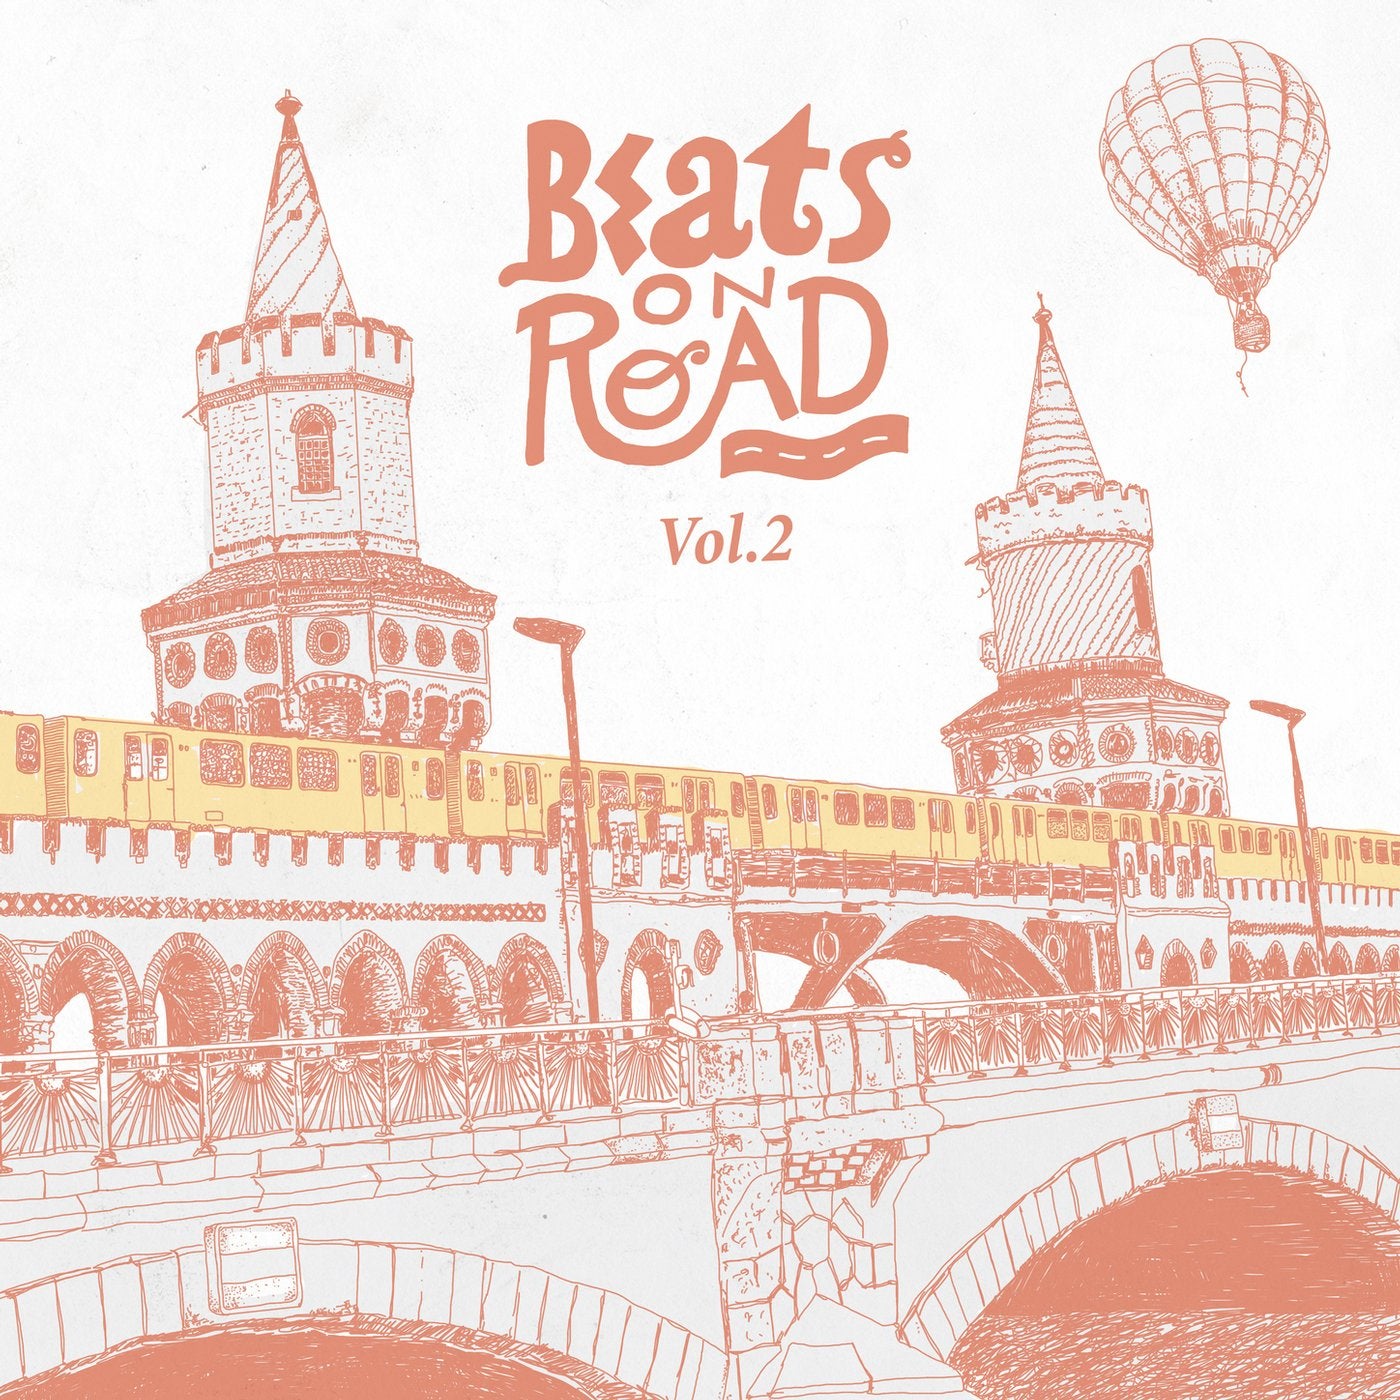 Beats on Road Vol. 2